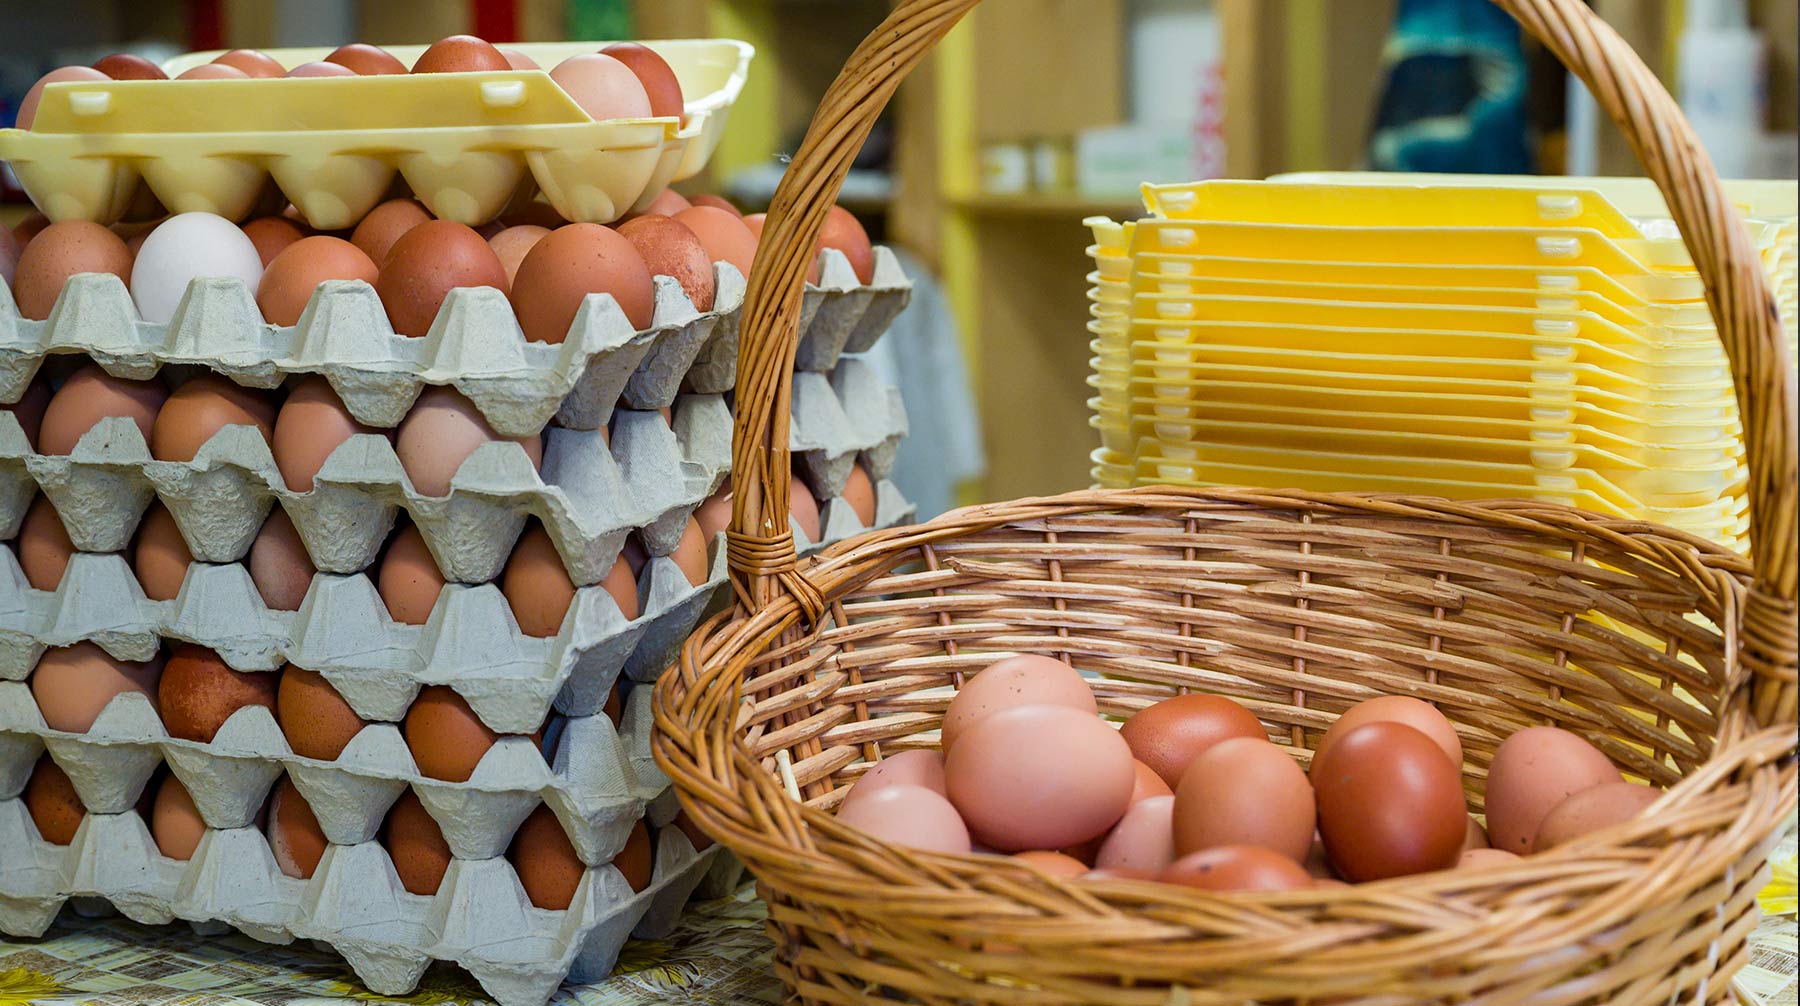 Опознать несвежее яйцо не так сложно, как кажется. Его даже не нужно разбивать Фото: © Global Look Press / Patrick Pleul